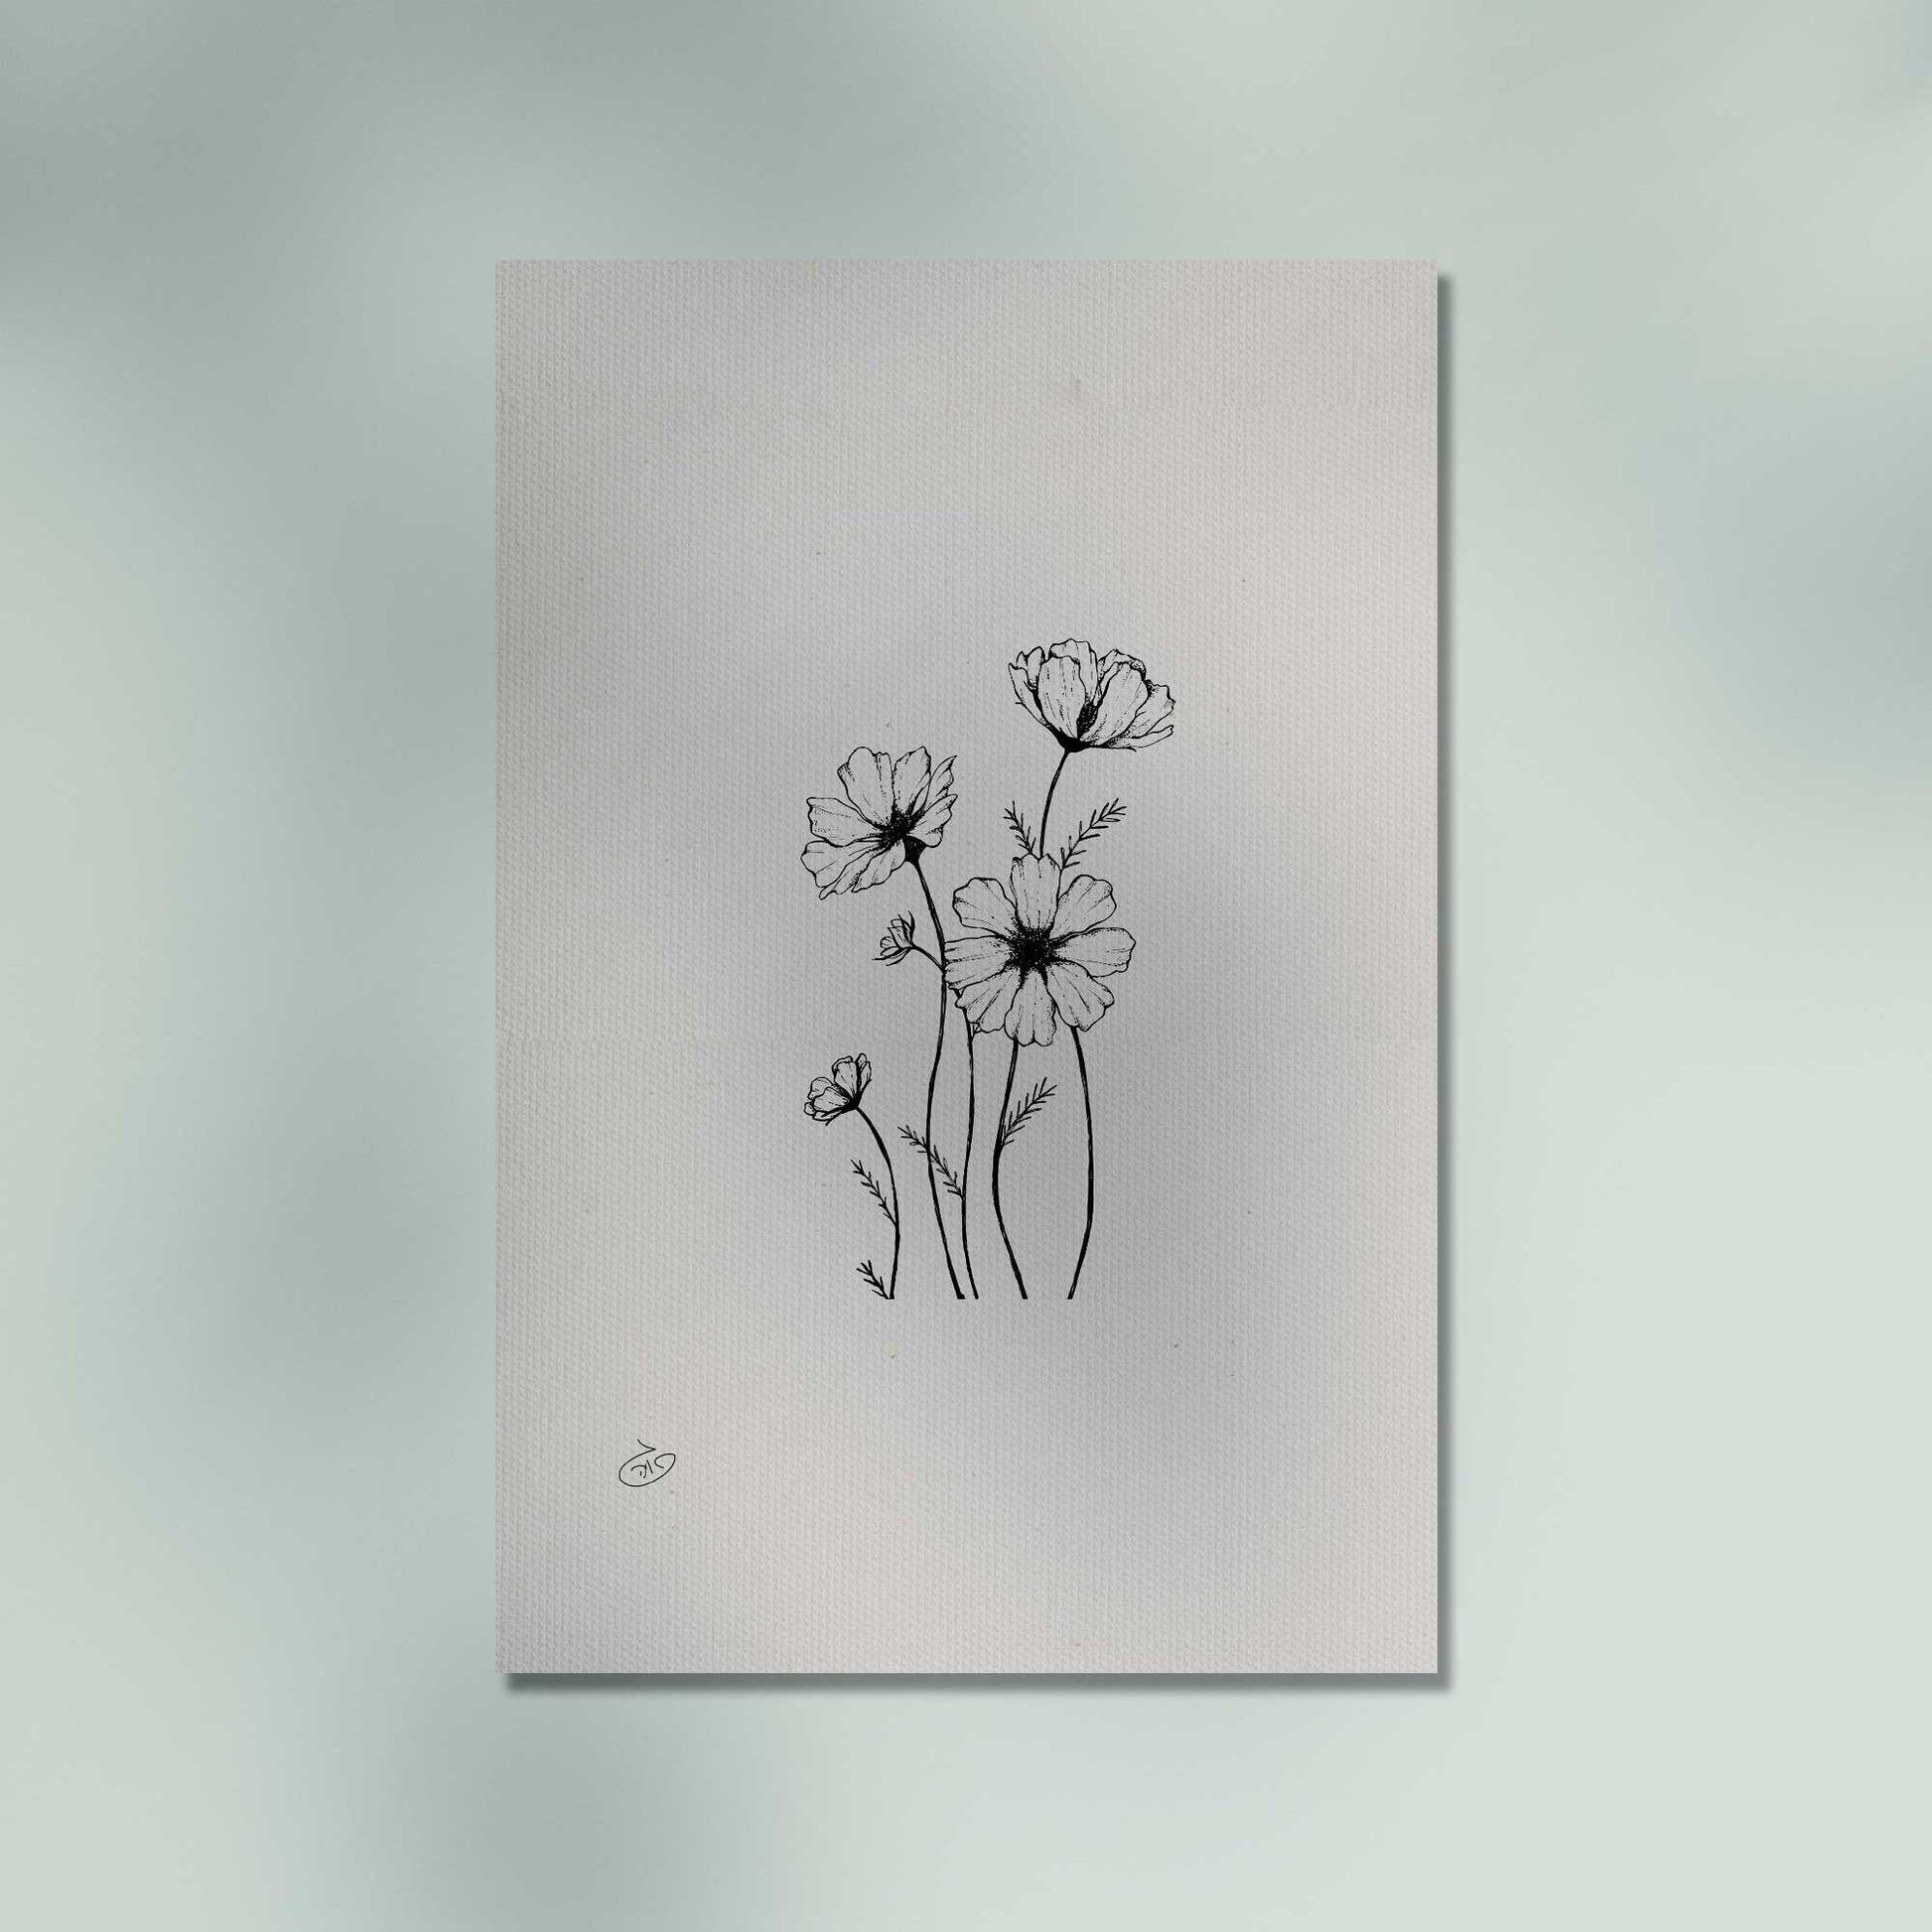 פוסטר Valentina Flowers Poster ציור מקורי של גאיה המקדם את המודעות לאלימות בין בני זוג בכלל וכלפי נשים בפרט